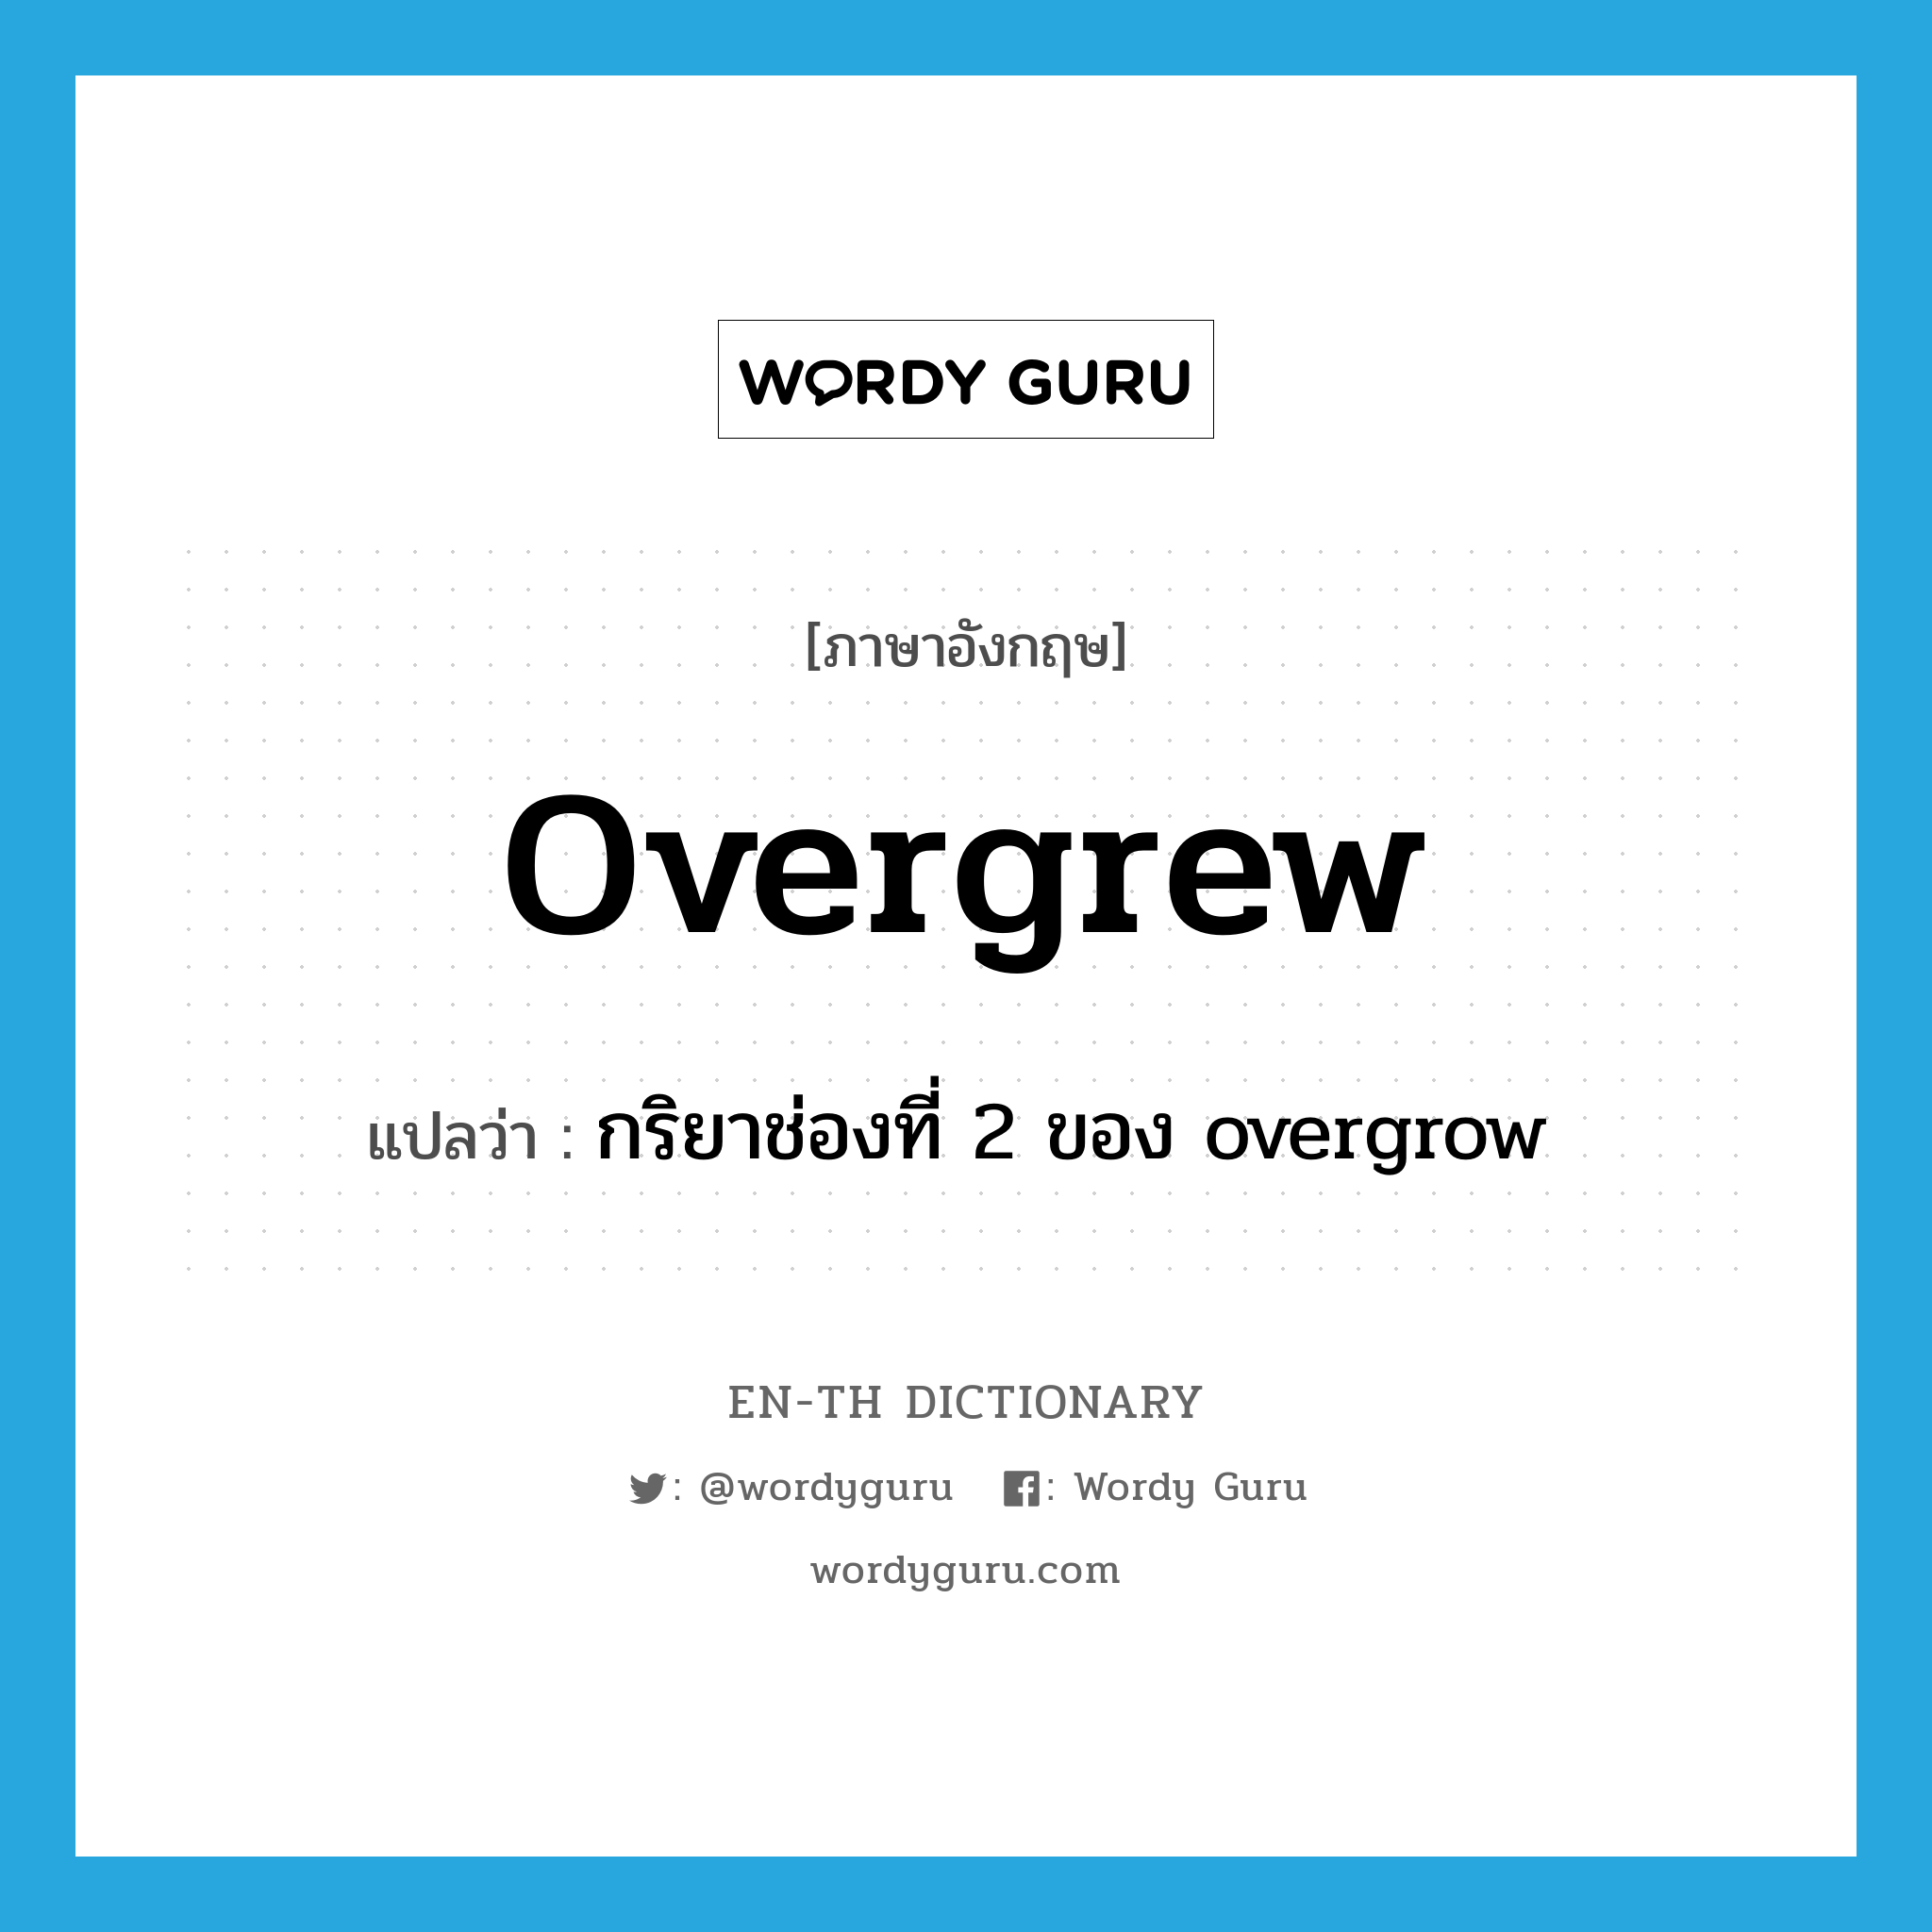 กริยาช่องที่ 2 ของ overgrow ภาษาอังกฤษ?, คำศัพท์ภาษาอังกฤษ กริยาช่องที่ 2 ของ overgrow แปลว่า overgrew ประเภท VI หมวด VI